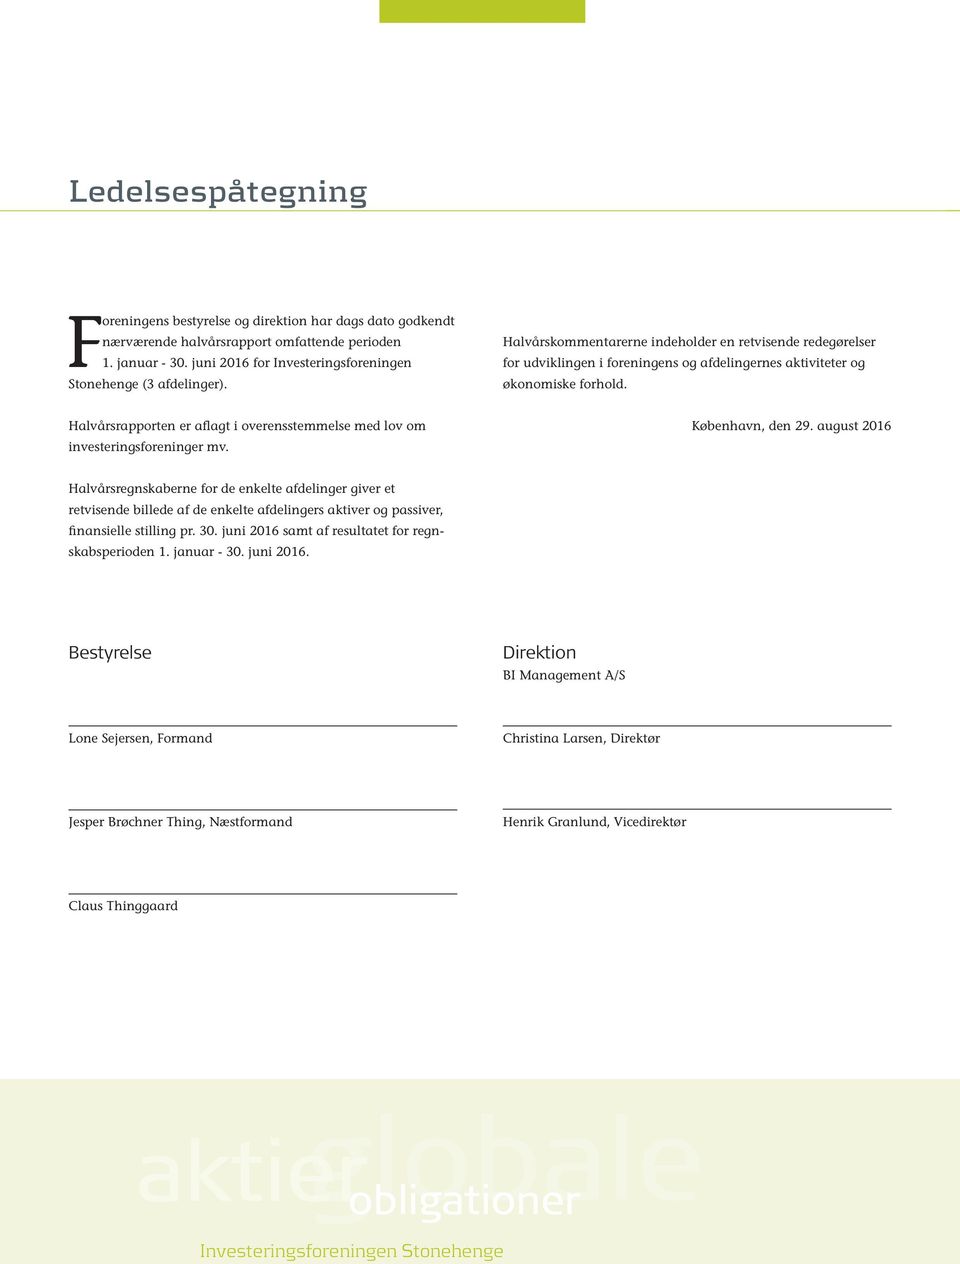 Halvårsrapporten er aflagt i overensstemmelse med lov om investeringsforeninger mv. København, den 29.